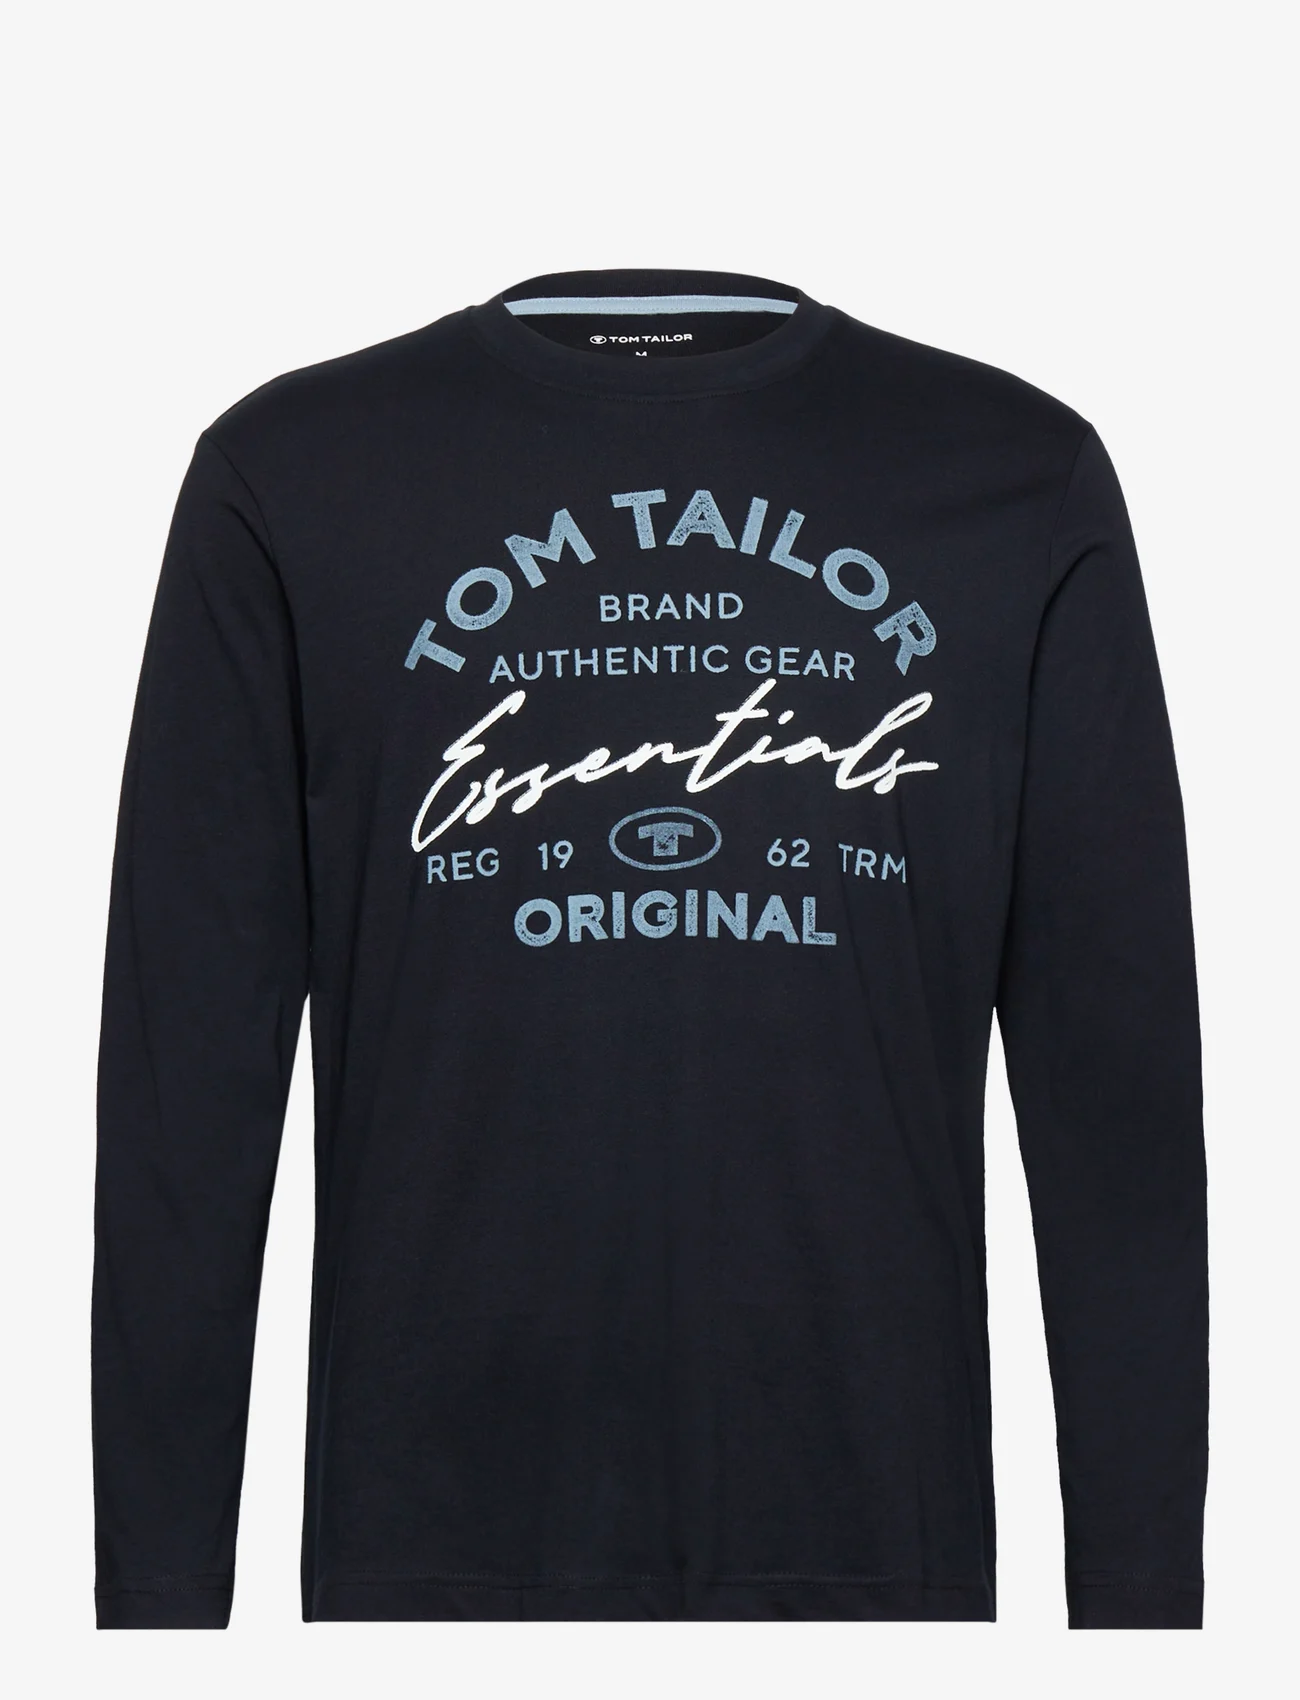 Tom Tailor - longsleeve with print - die niedrigsten preise - black - 0